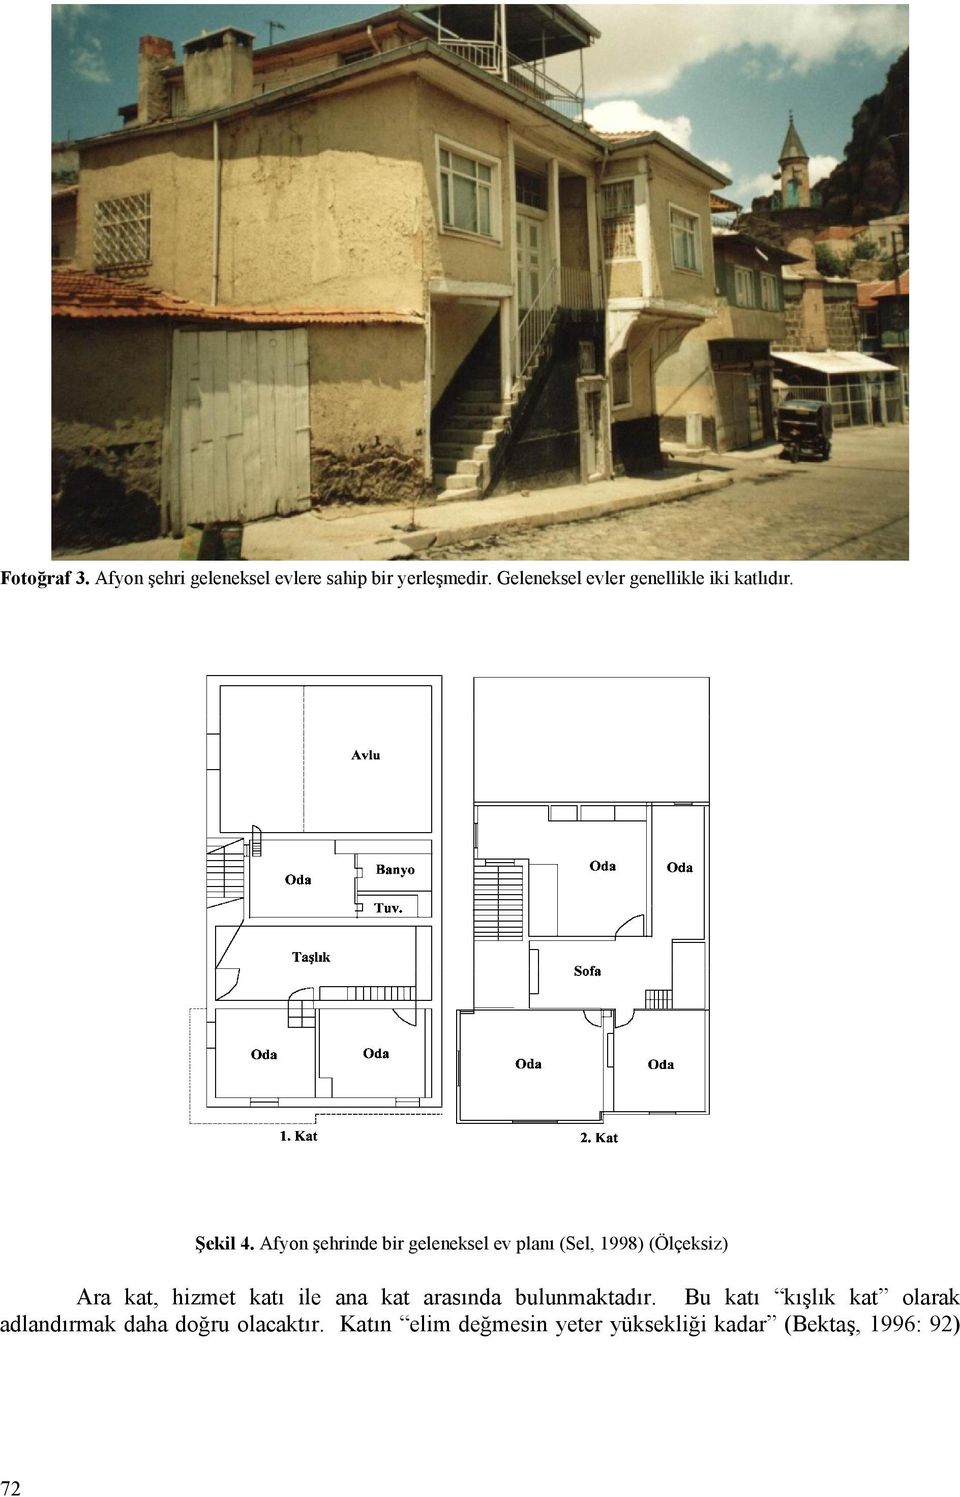 Afyon şehrinde bir geleneksel ev planı (Sel, 1998) (Ölçeksiz) Ara kat, hizmet katı ile